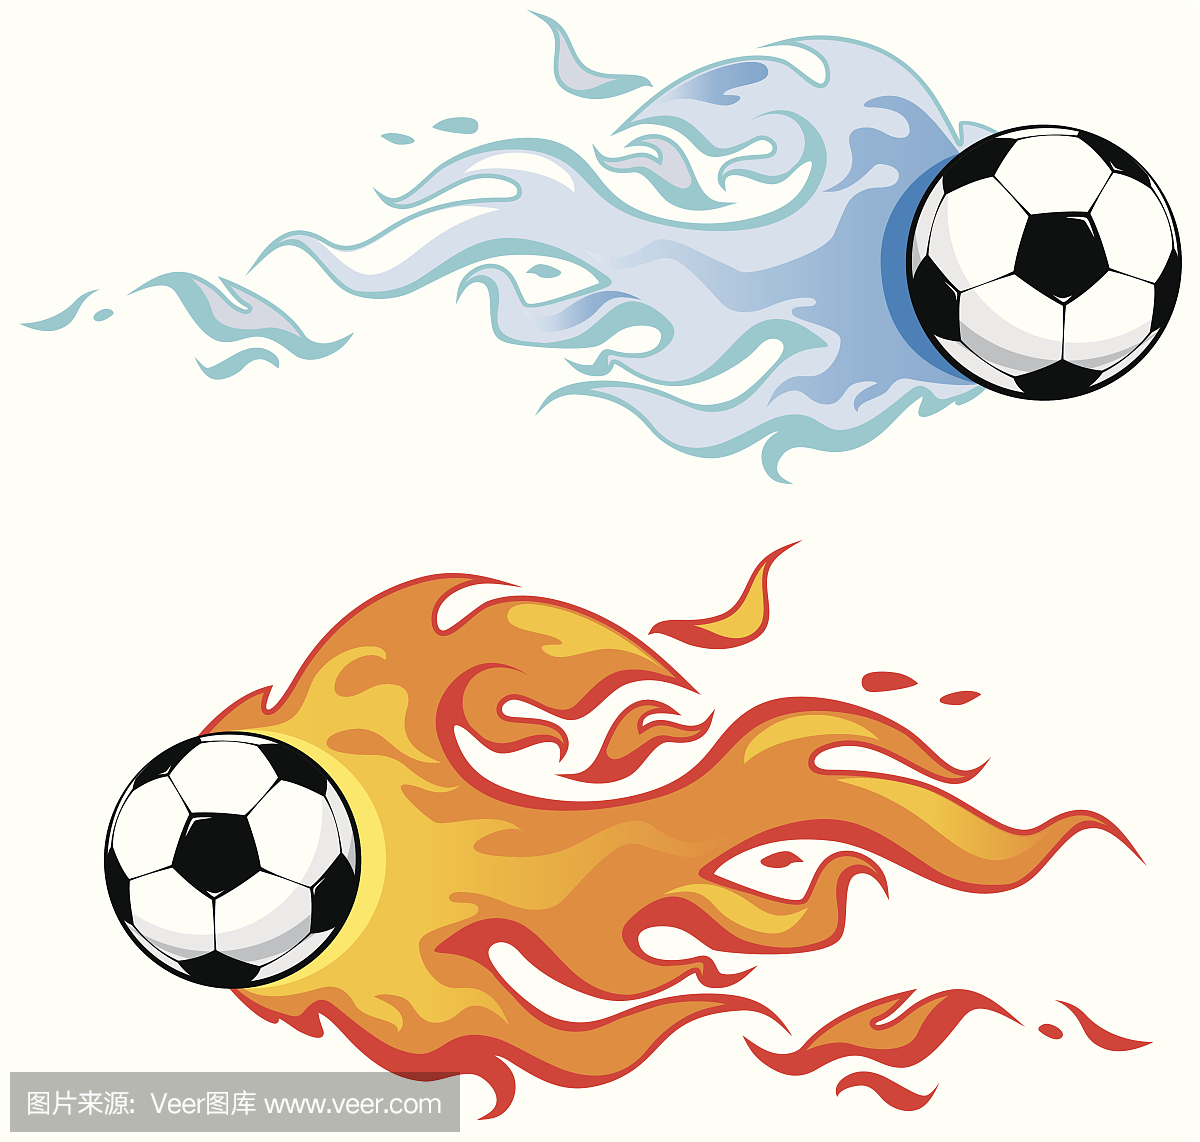 足球在火焰中